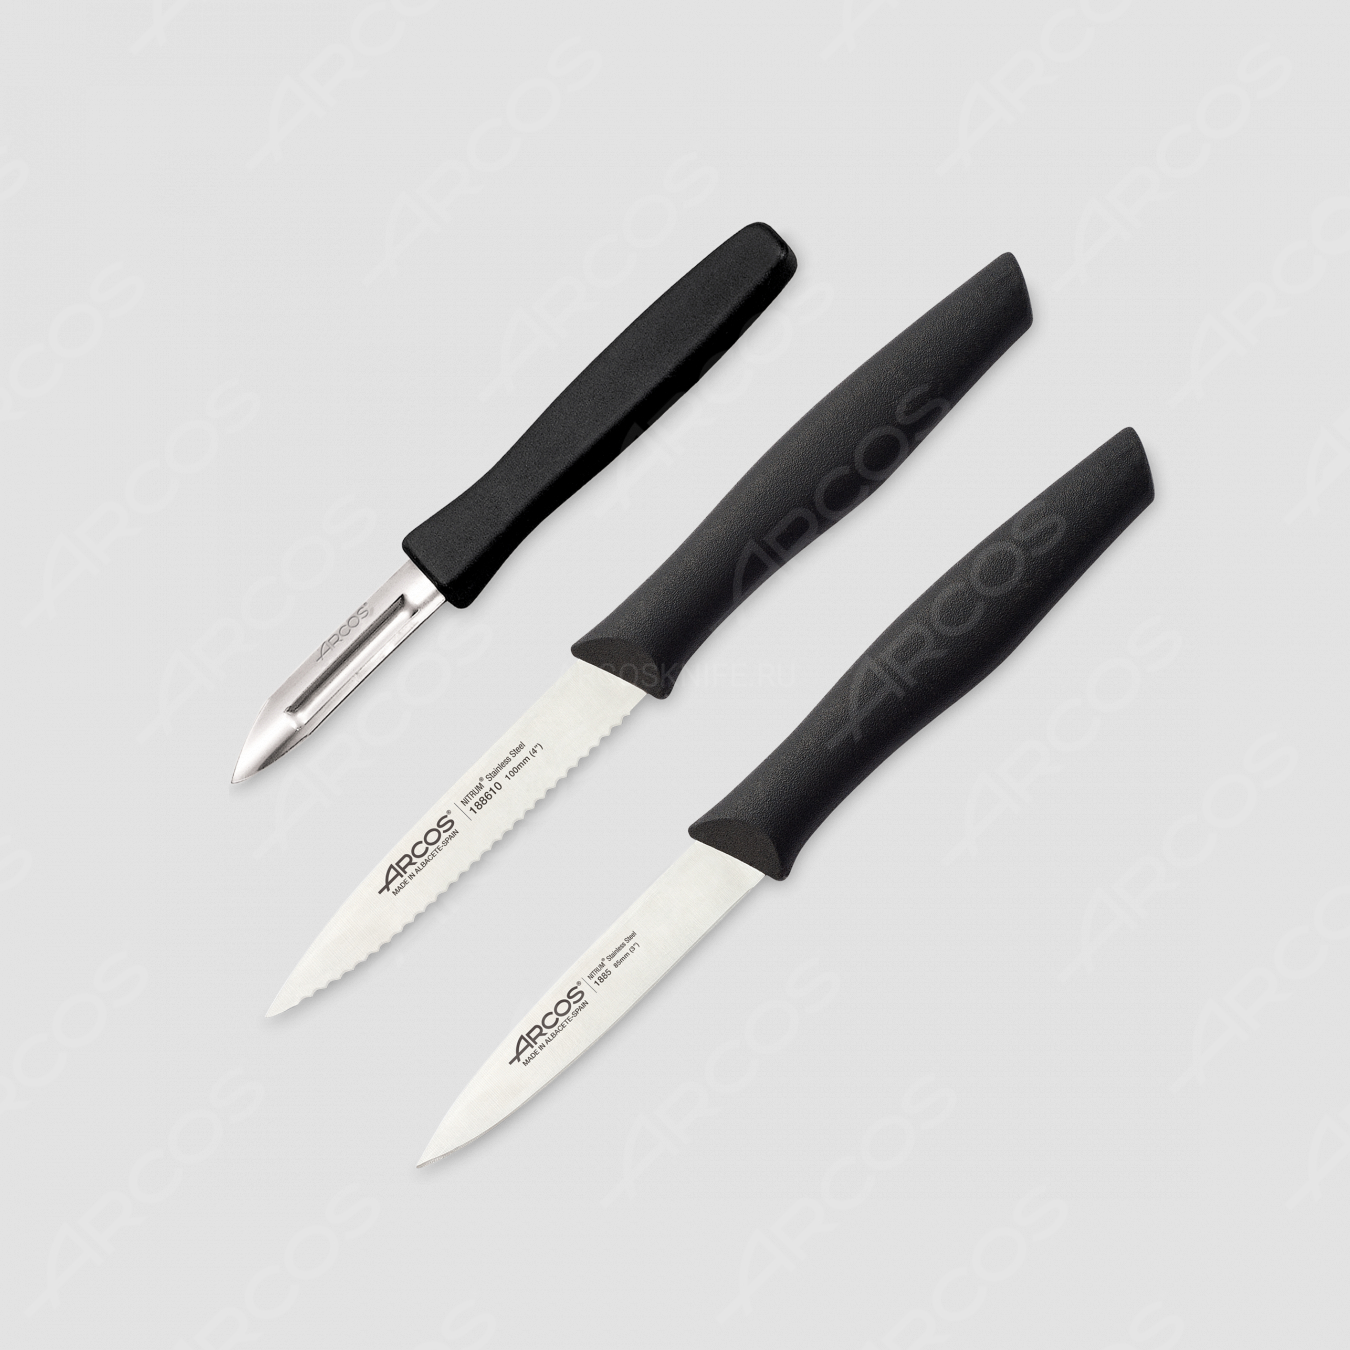 Набор из 3-х кухонных ножей для чистки и нарезки овощей, рукоять черная, серия Nova, ARCOS, Испания